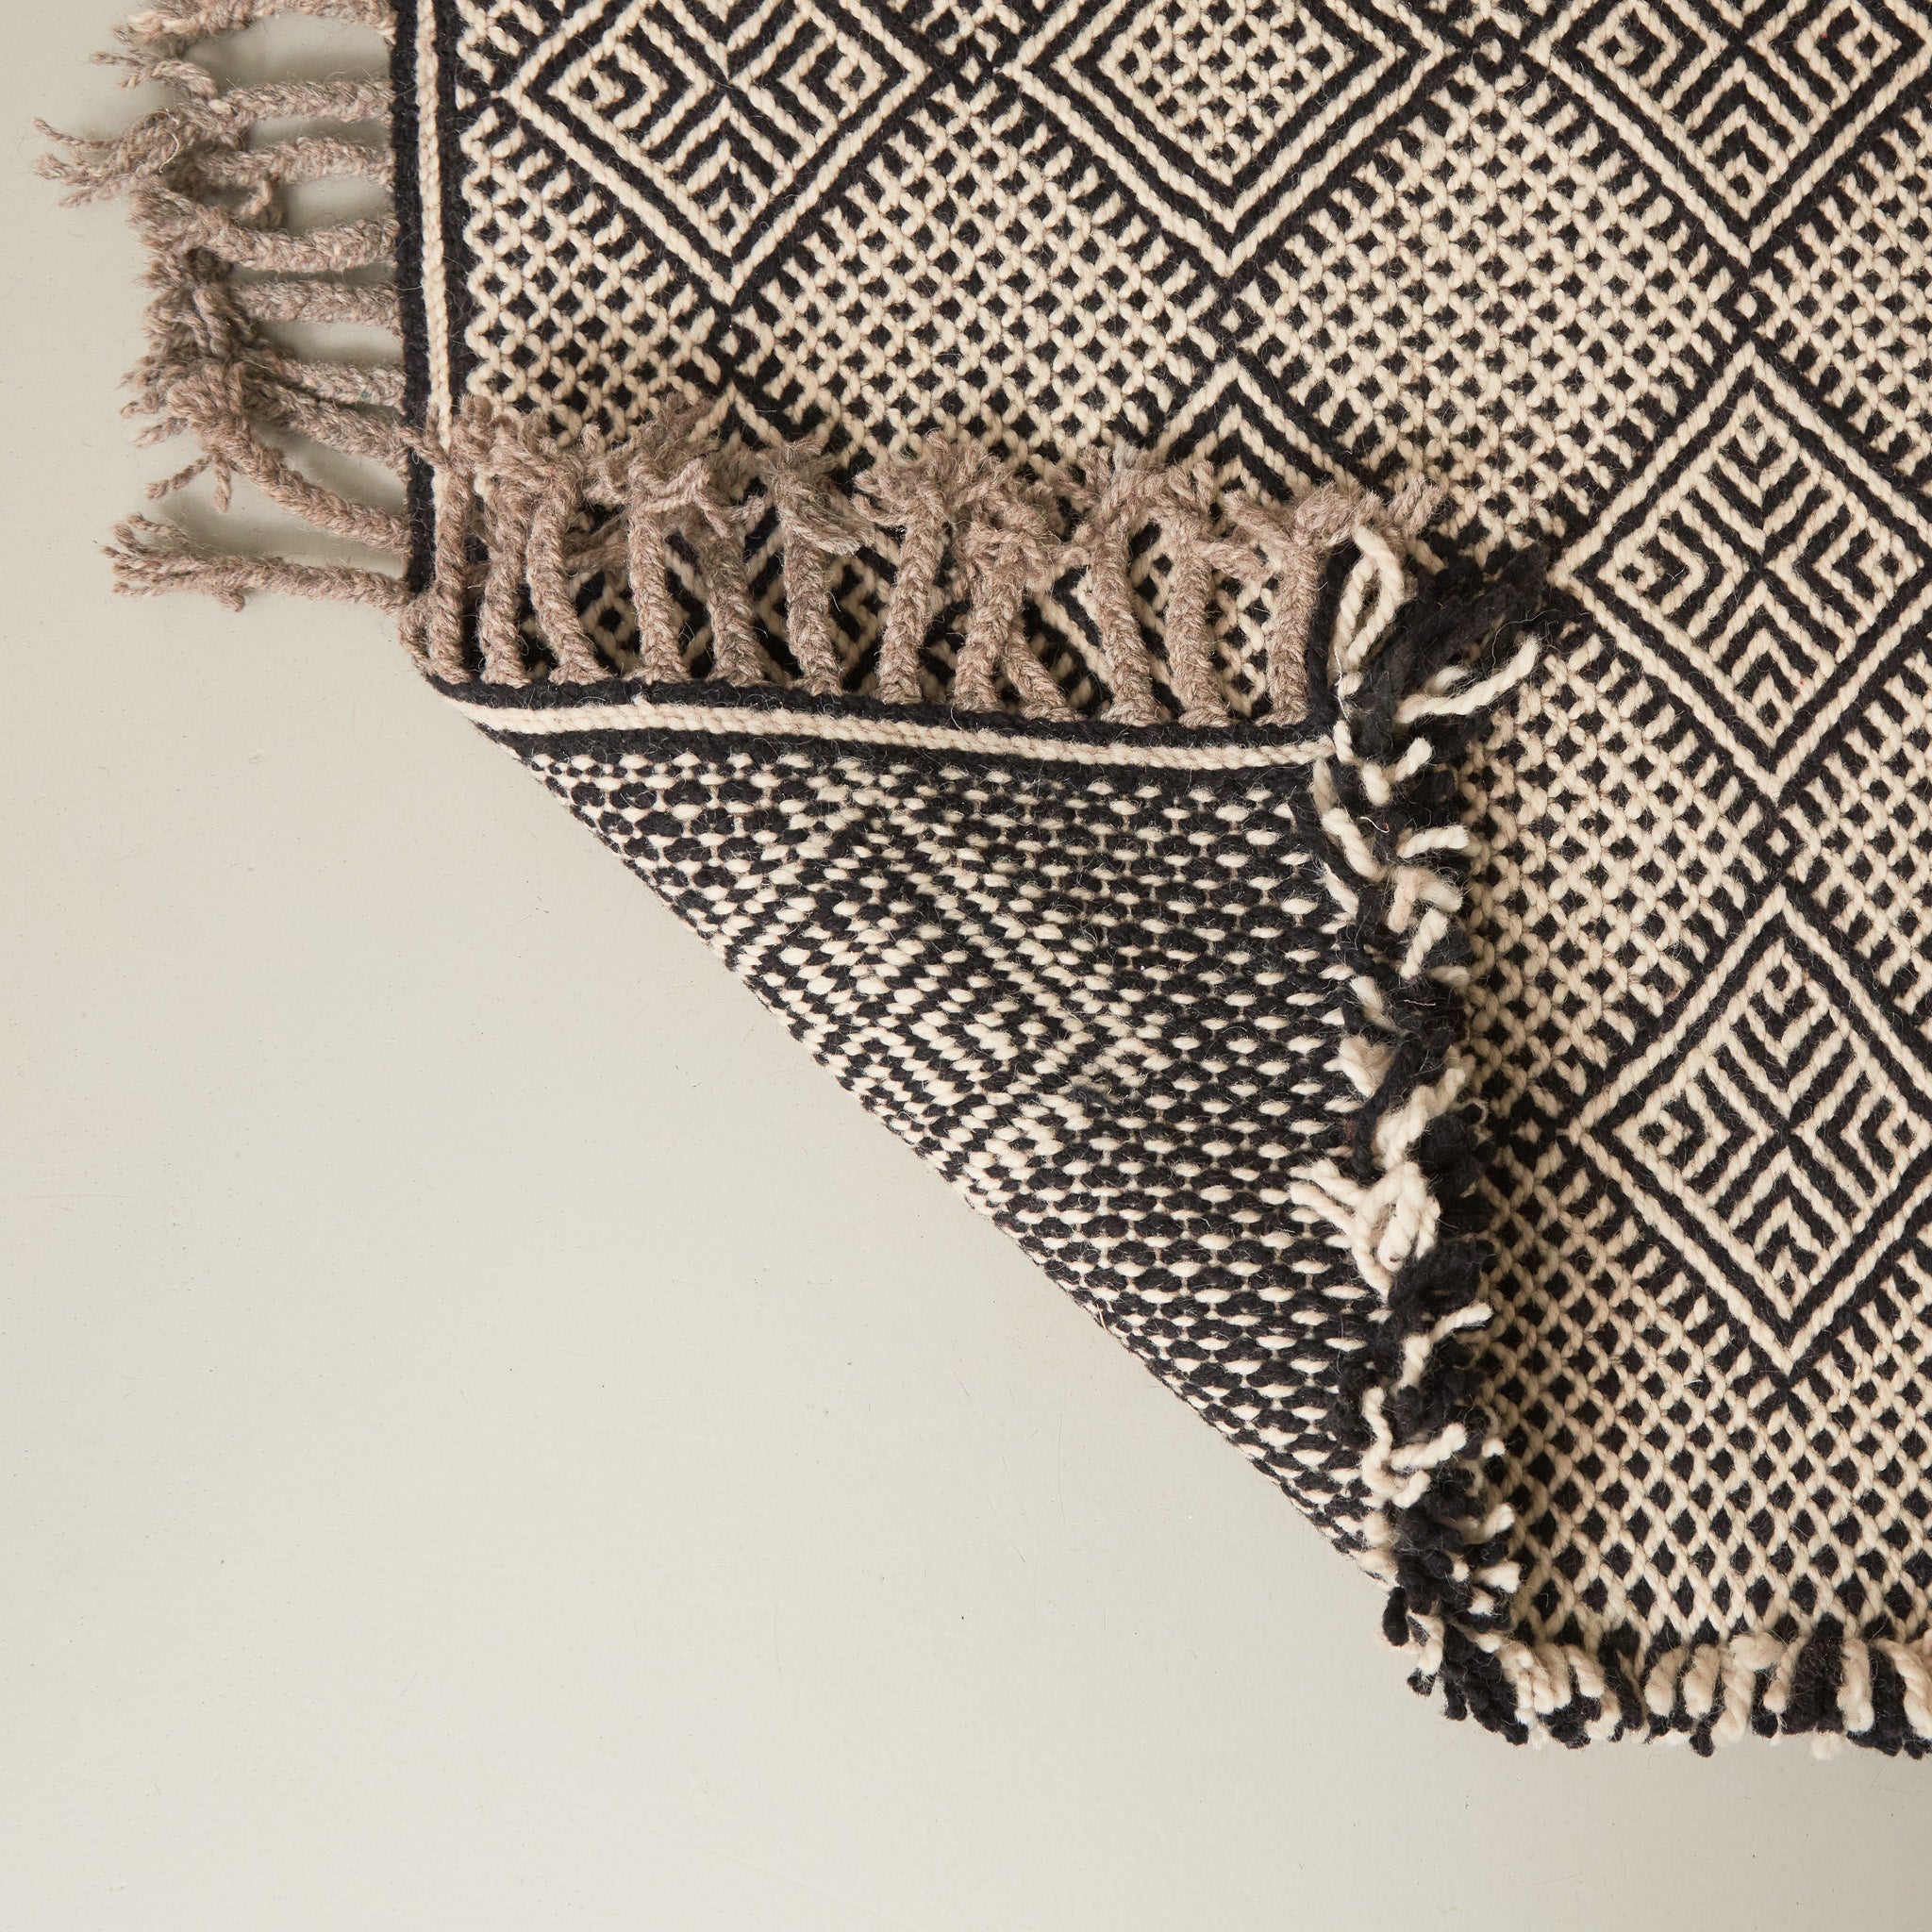 dettaglio del retro di un tappeto zanafi nero e bianco